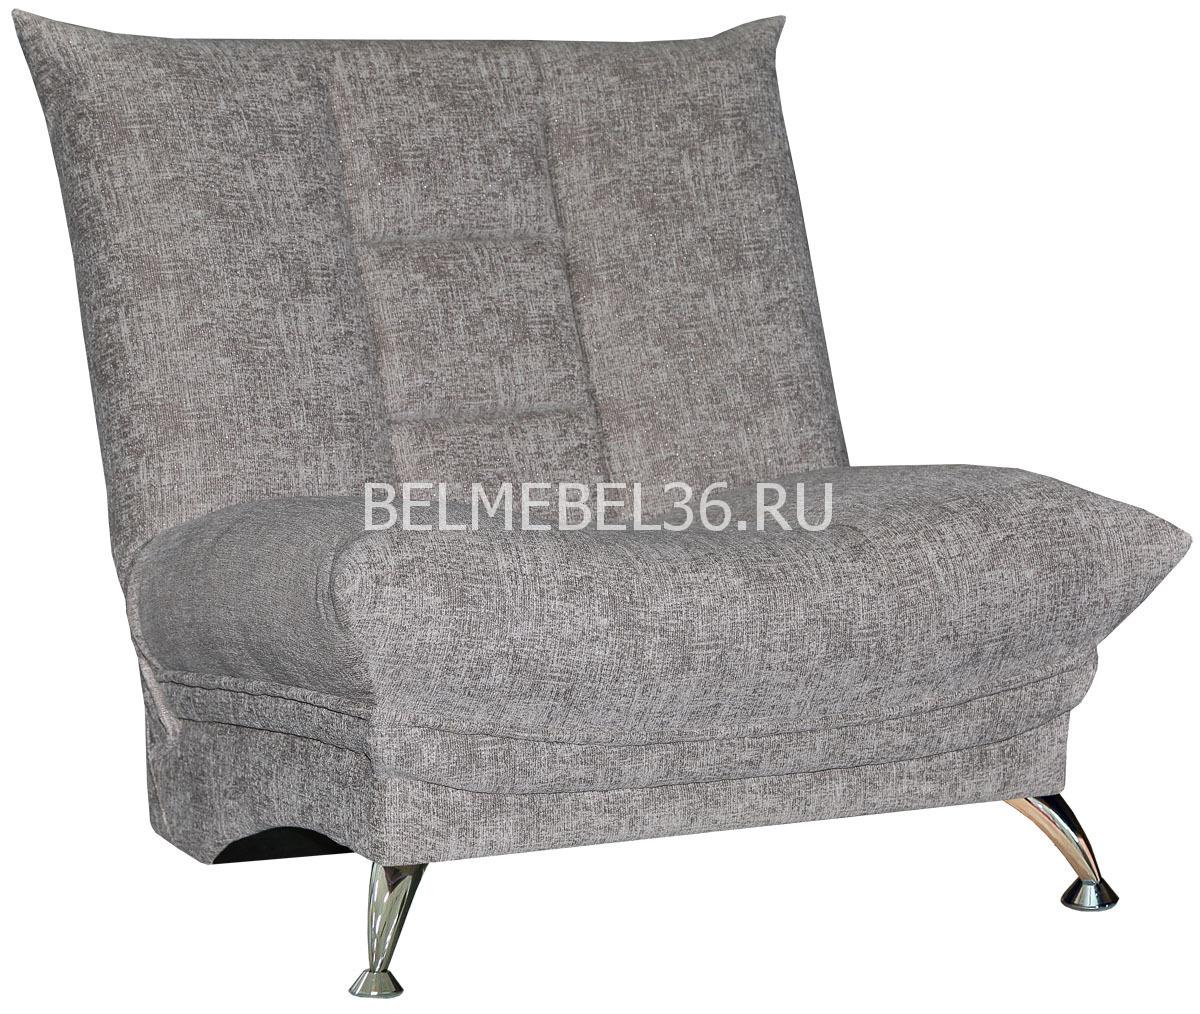 Шарро (12) П-Д148 | Белорусская мебель в Воронеже